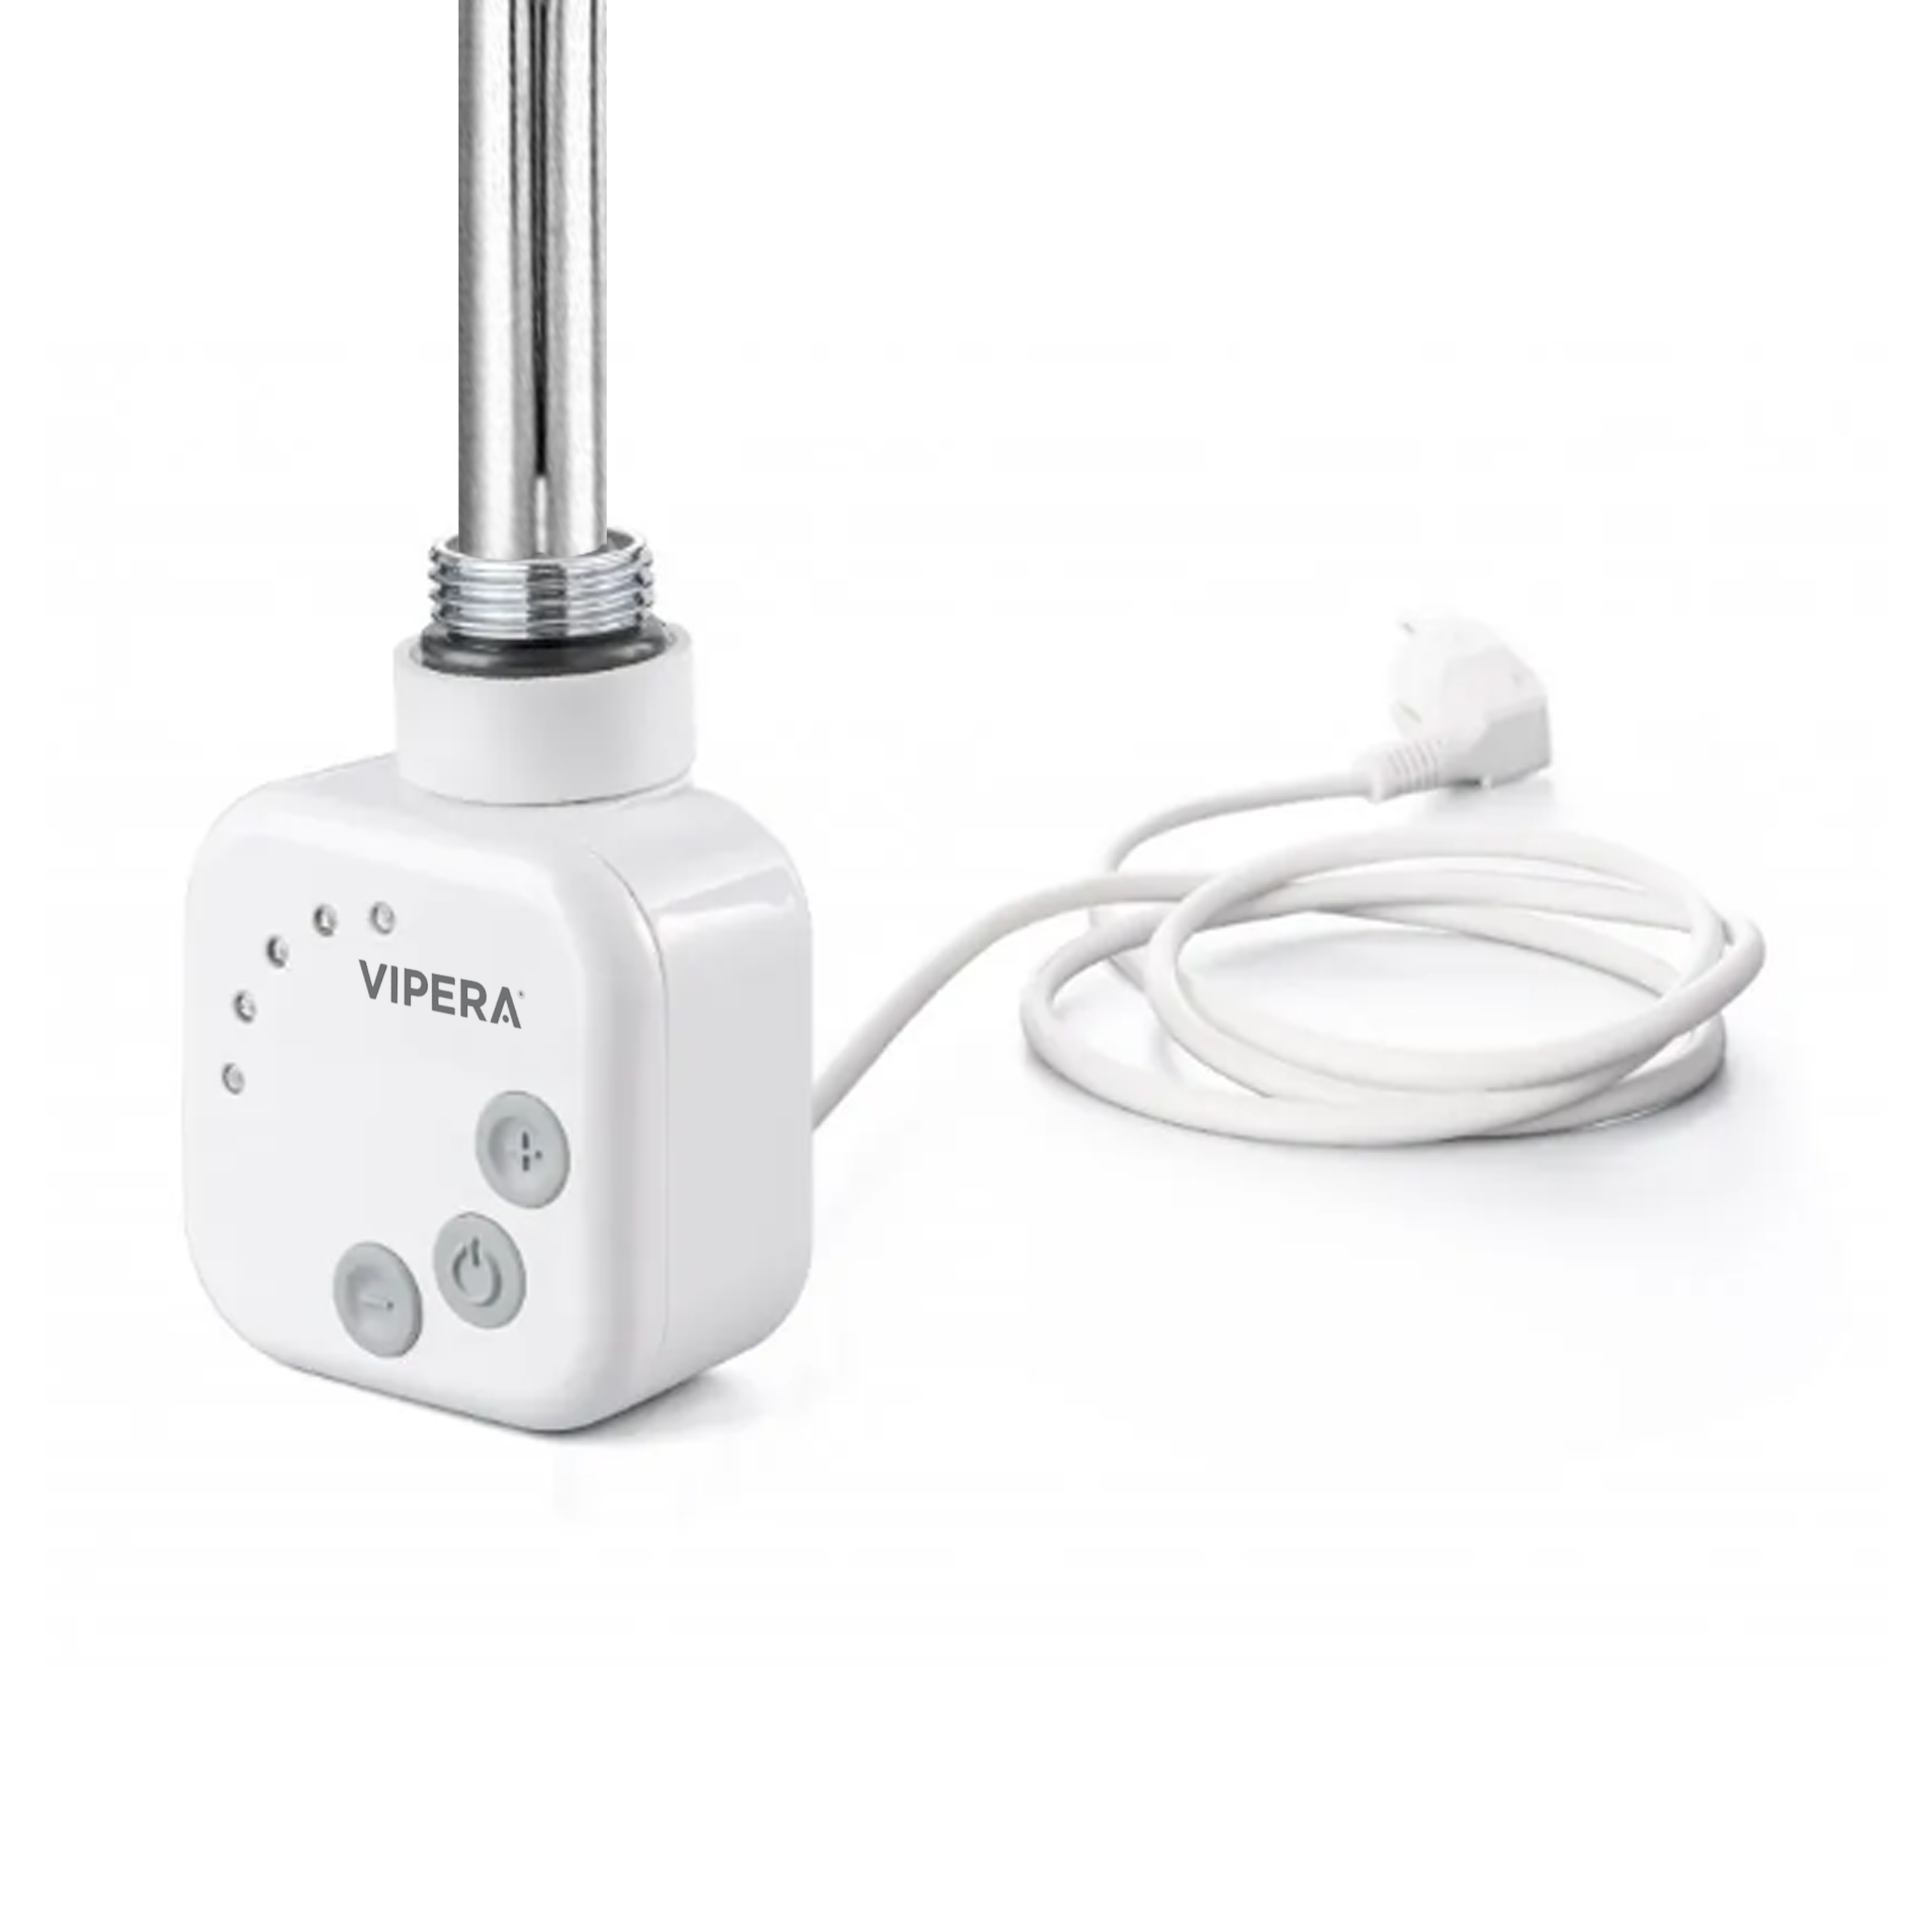 Vipera radiator thermostaat voor elektrische handdoekradiator 800W analoog wit